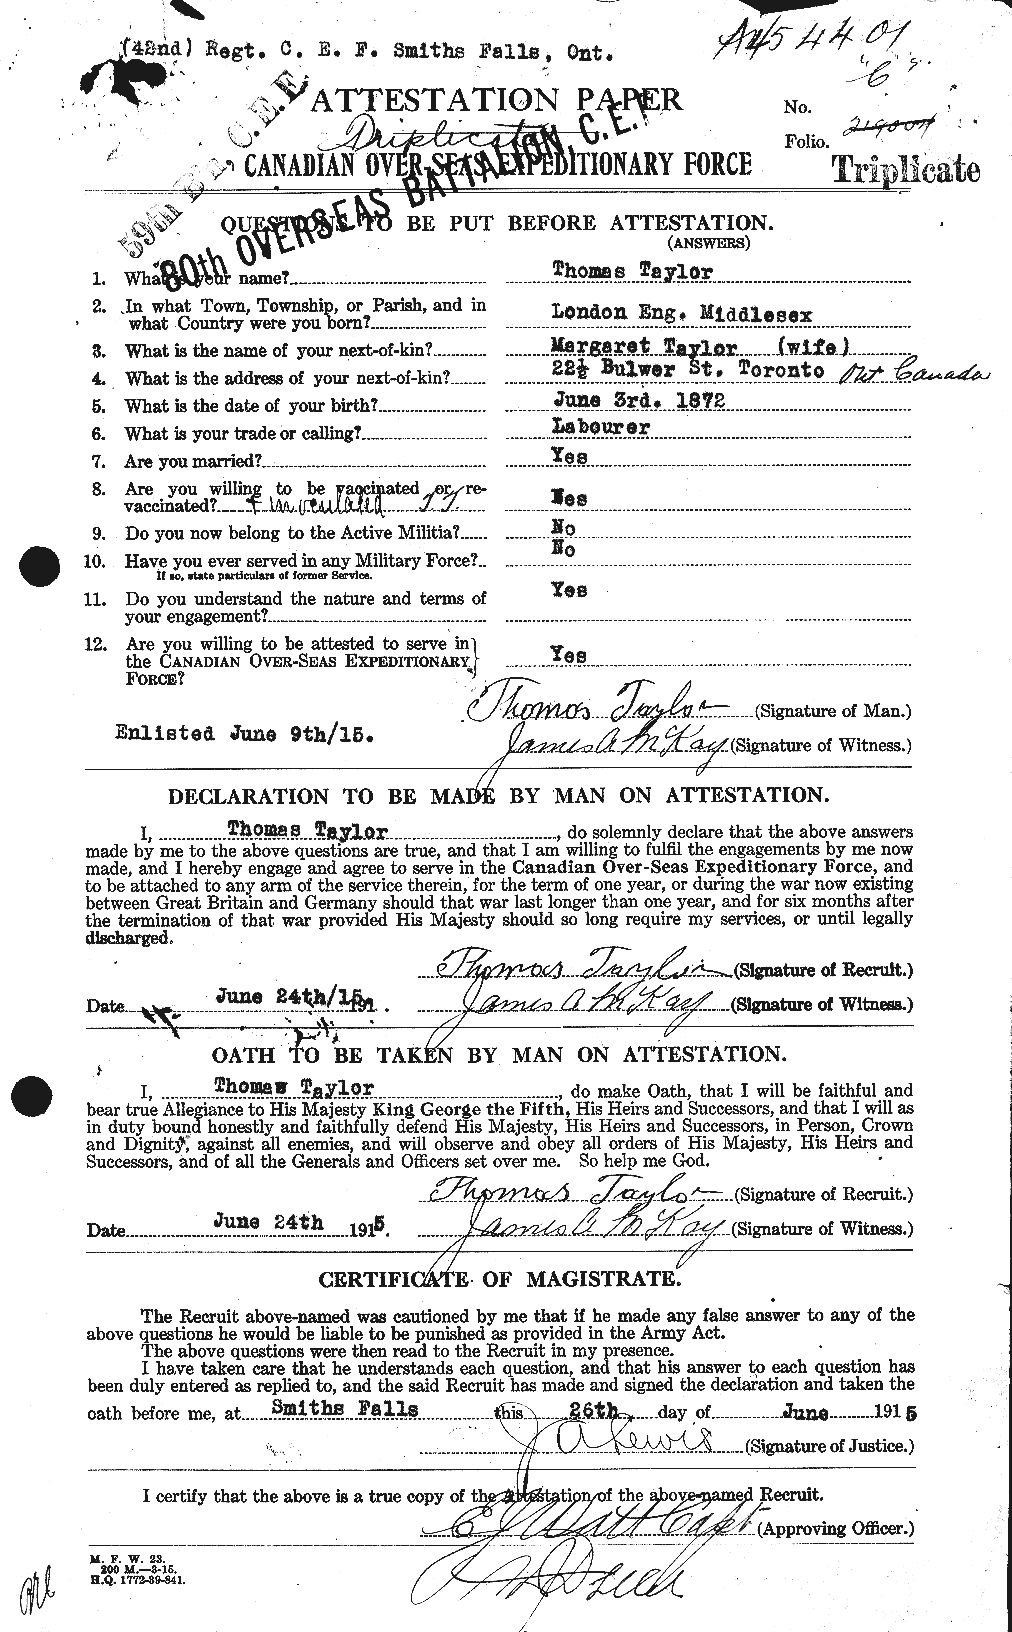 Dossiers du Personnel de la Première Guerre mondiale - CEC 627944a